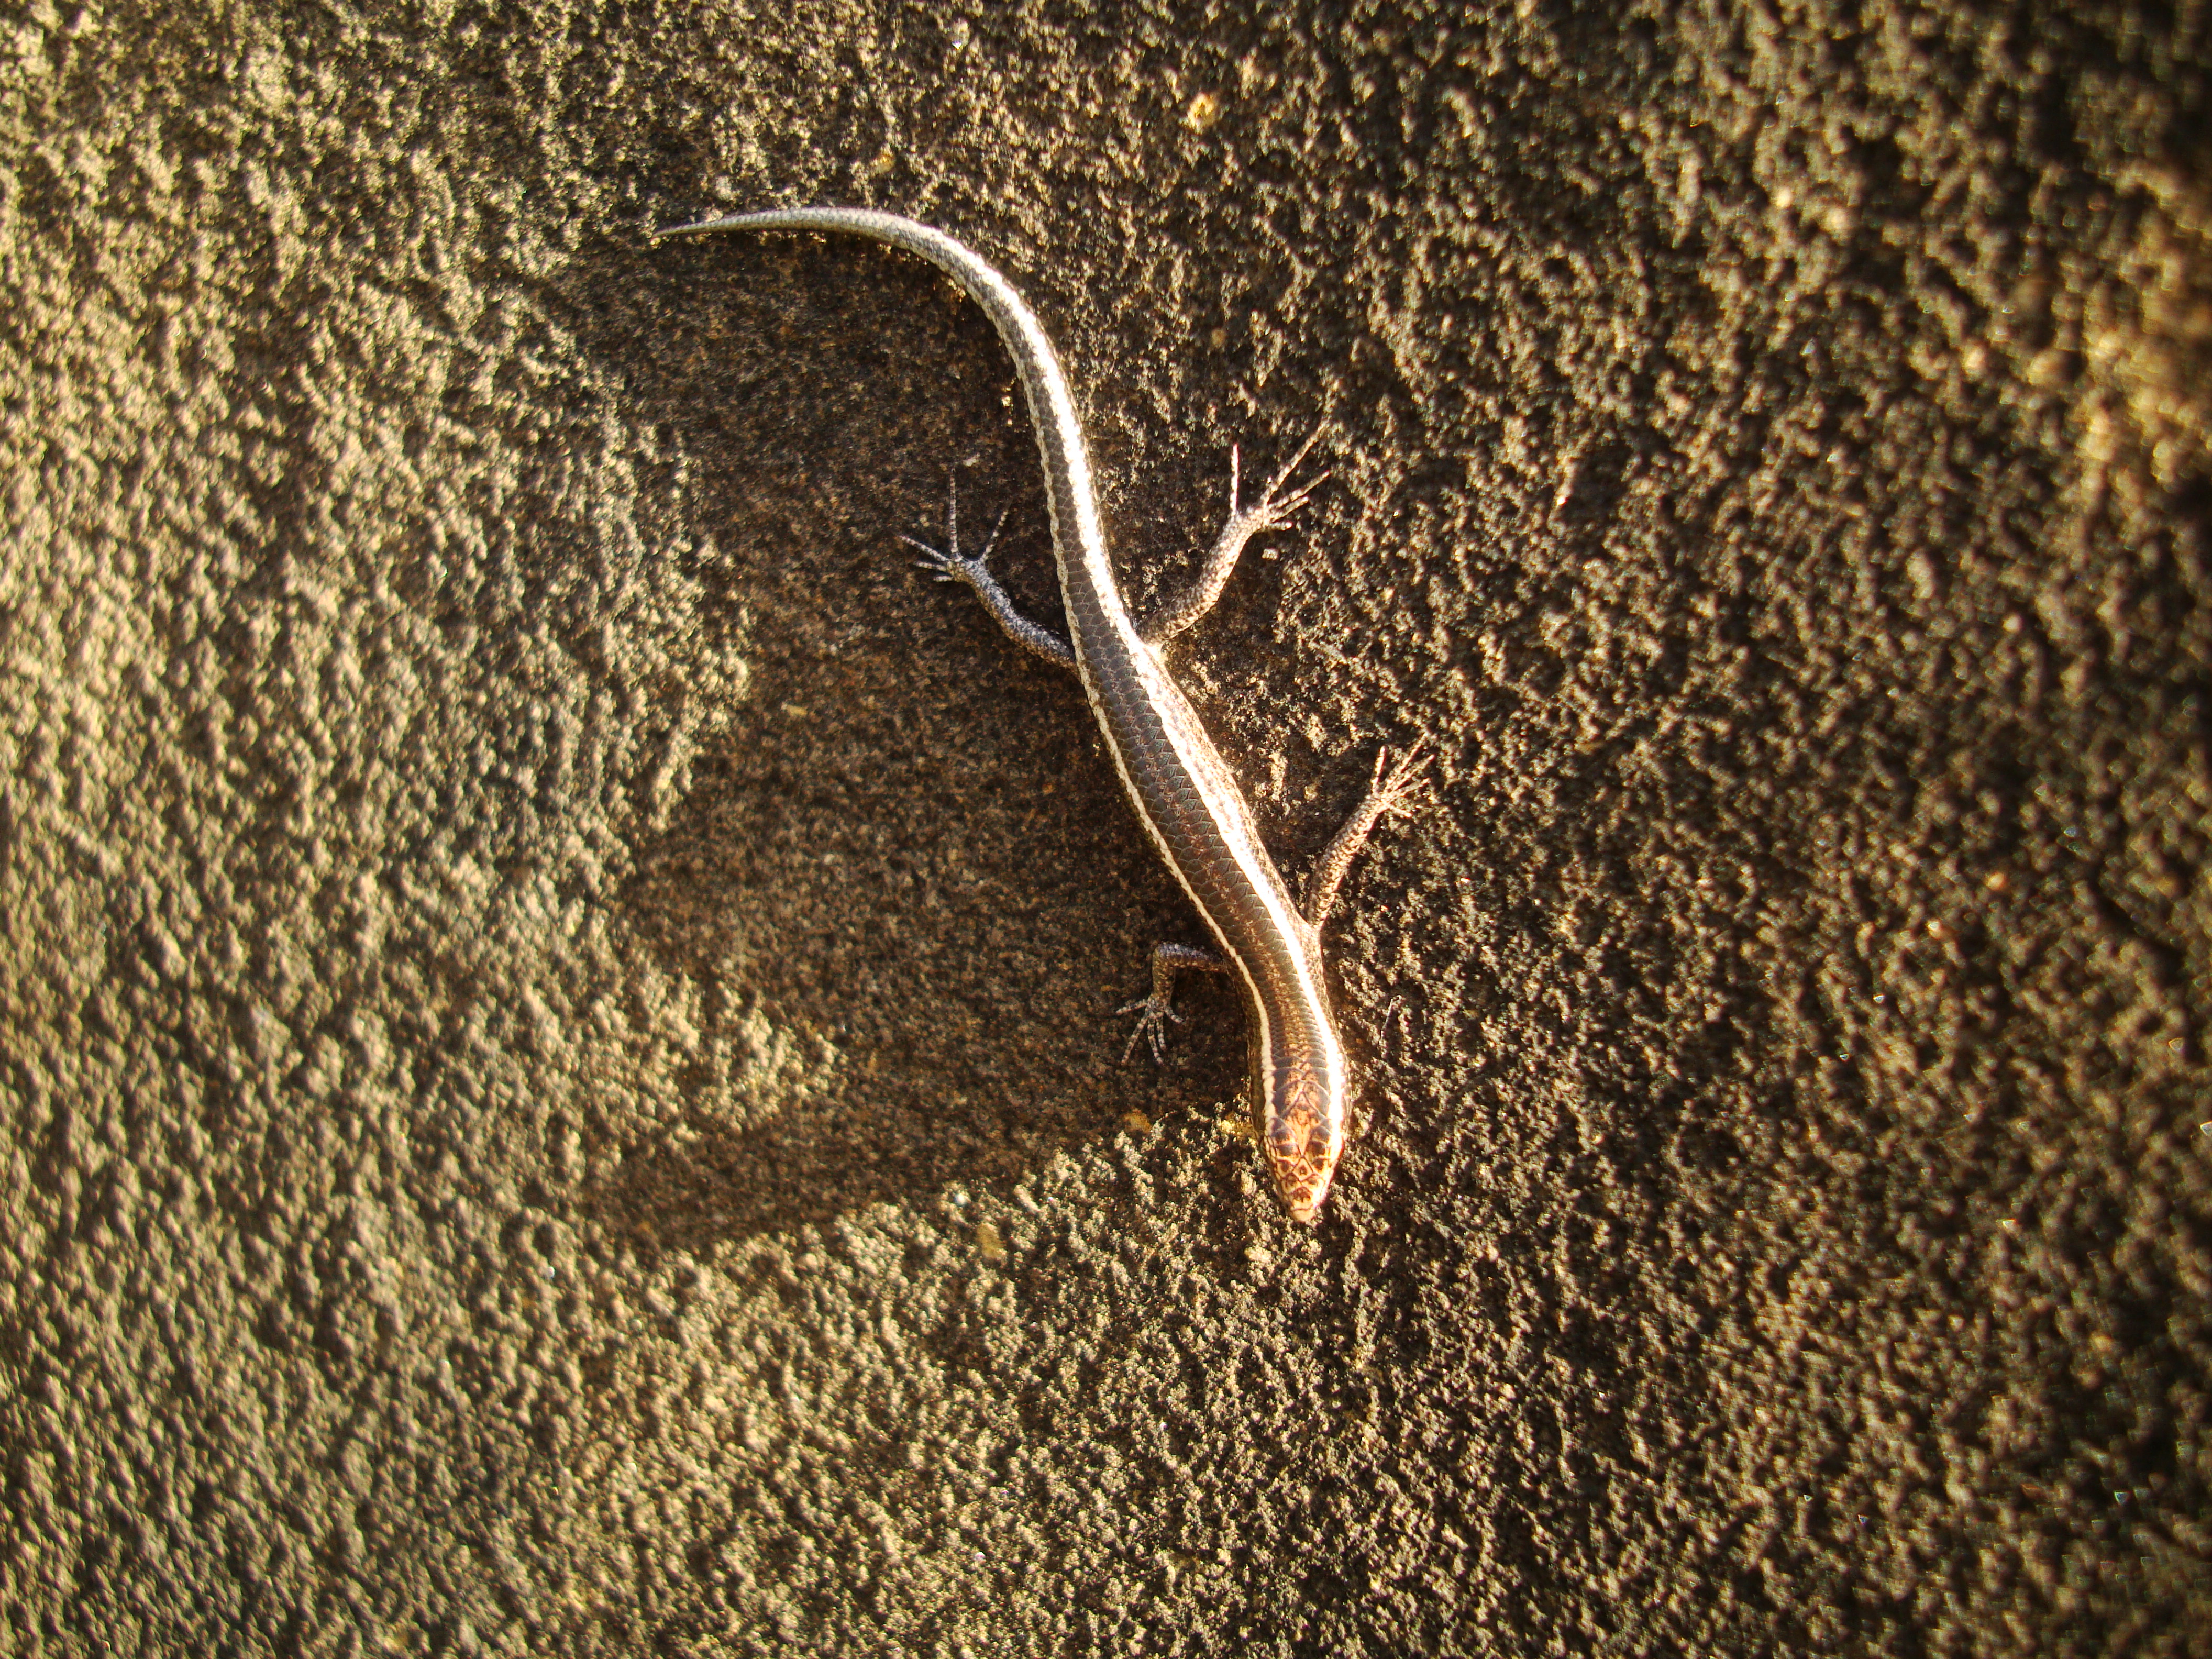 Australian Lizard Noosa 04